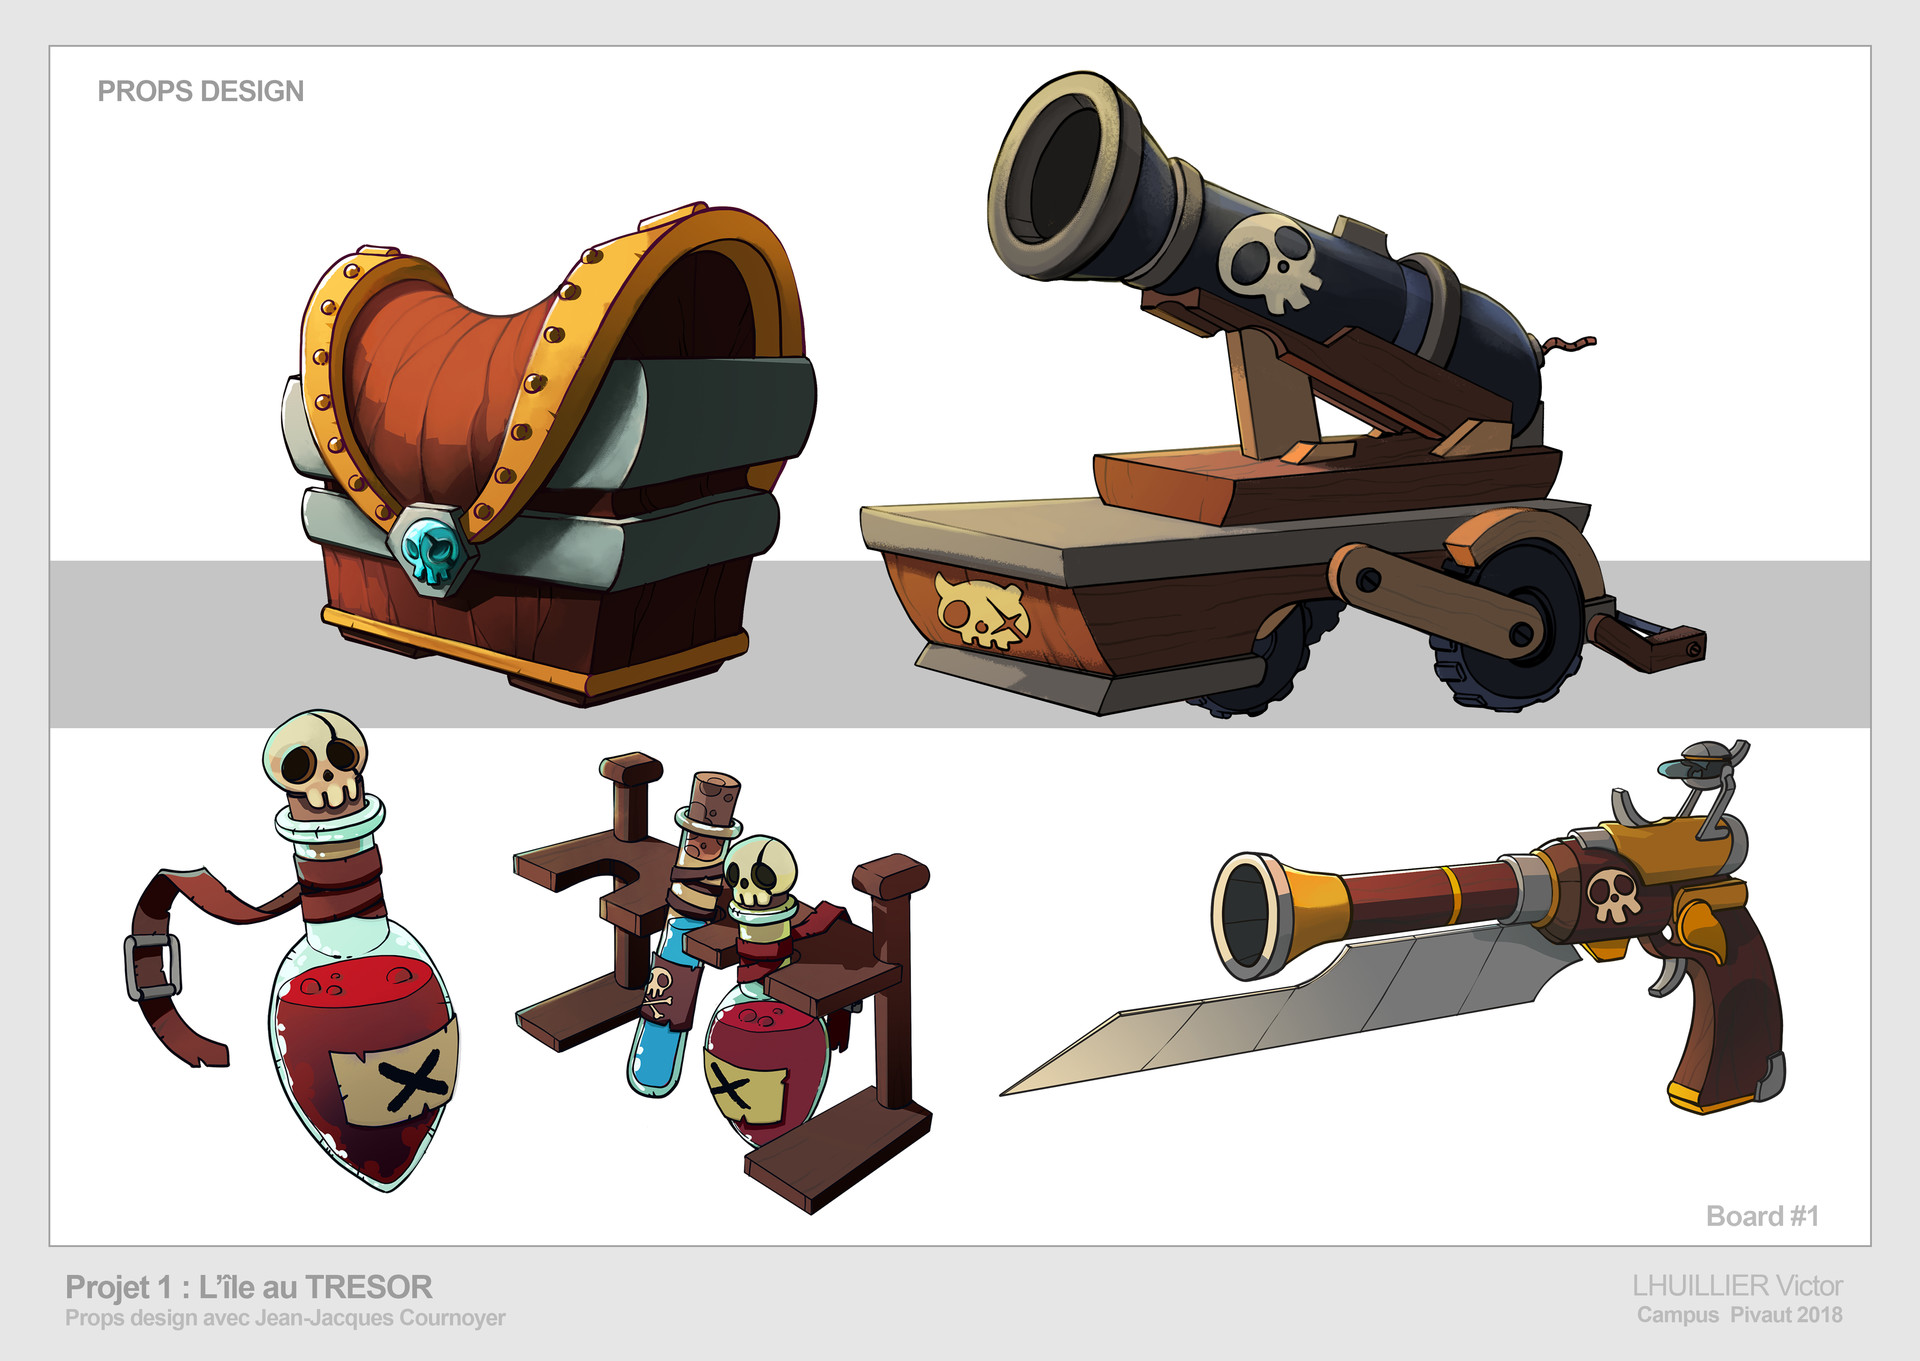 Victor Lhuillier (DookieMegaman) - Pirate props design